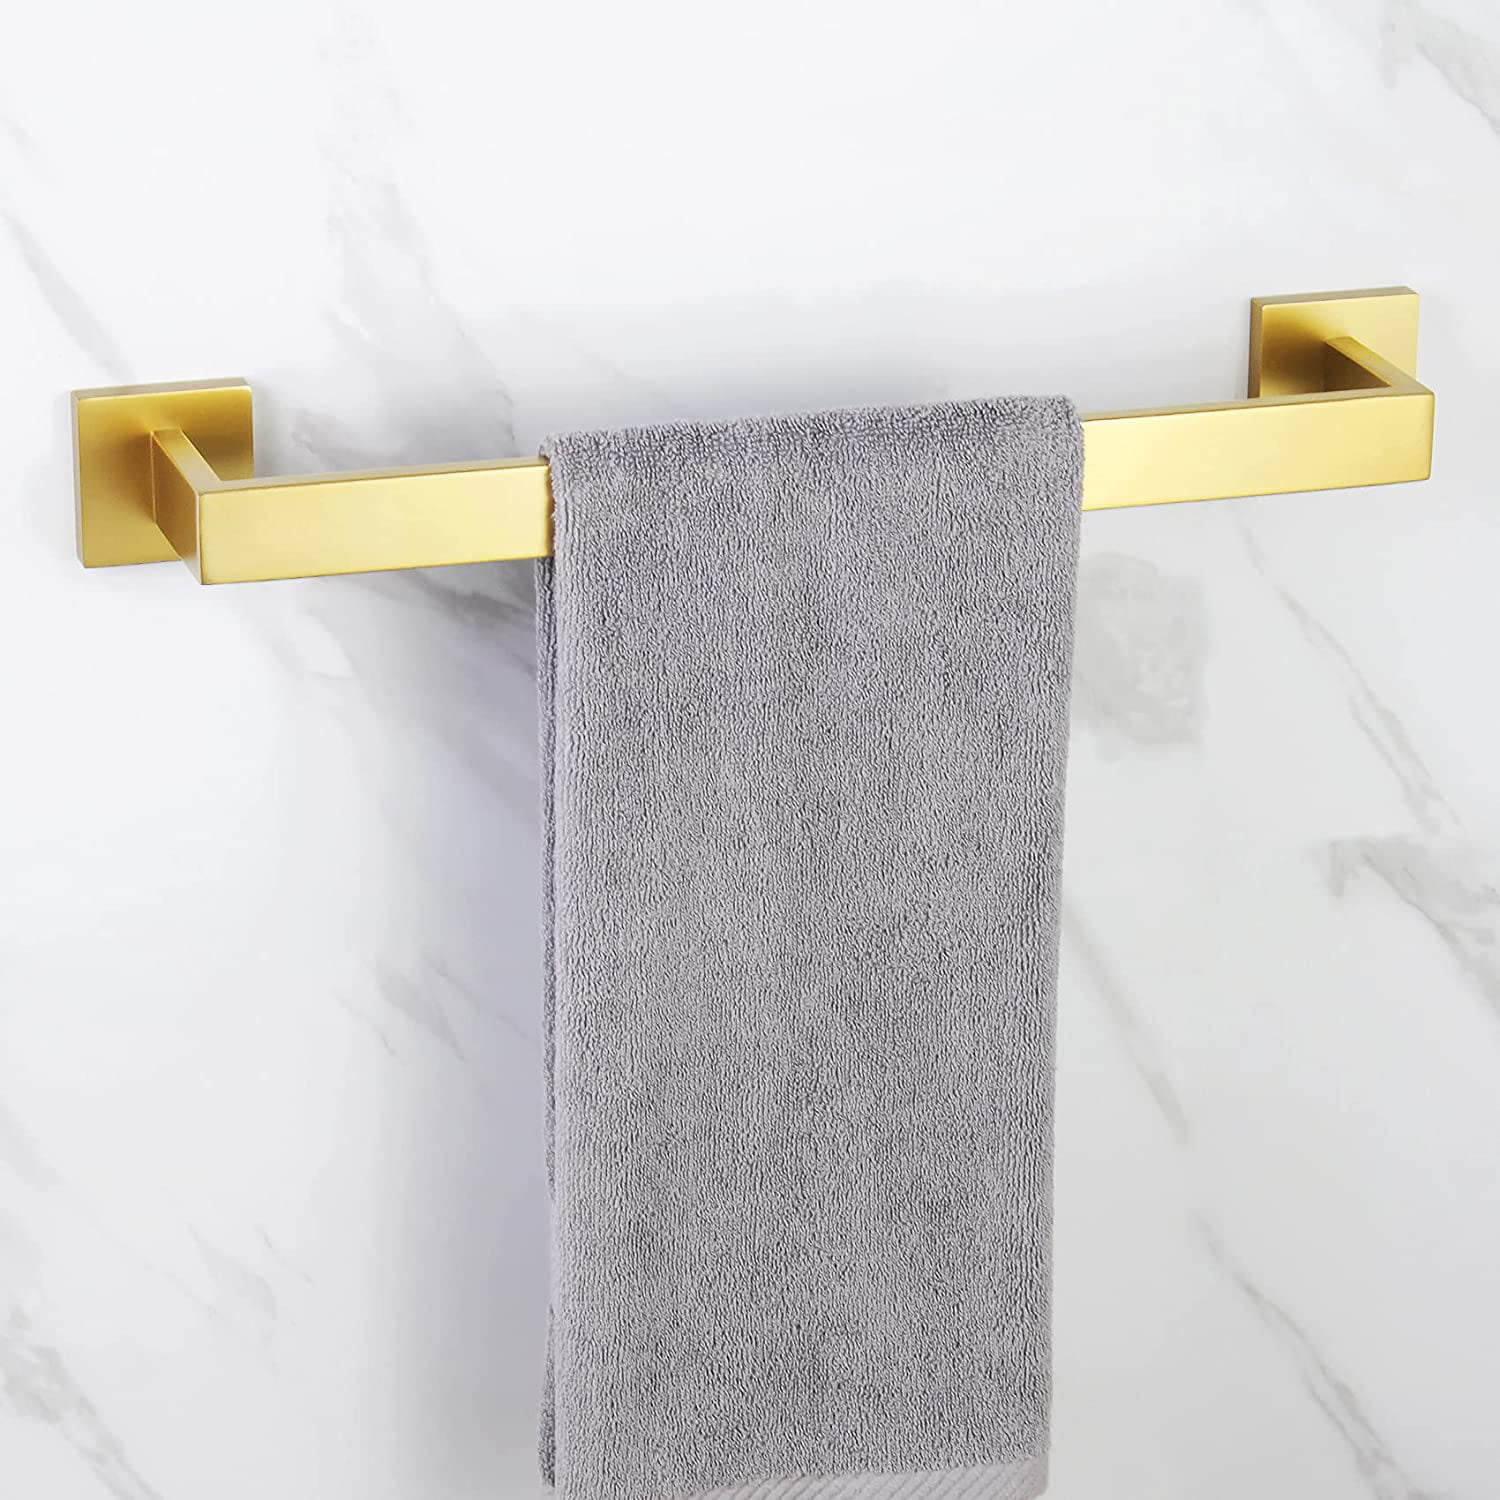 Details about   Towel Vintage Bathroom Wall Hook Hooks Coat Hanger holder Rack Hook 2 x 4.5 